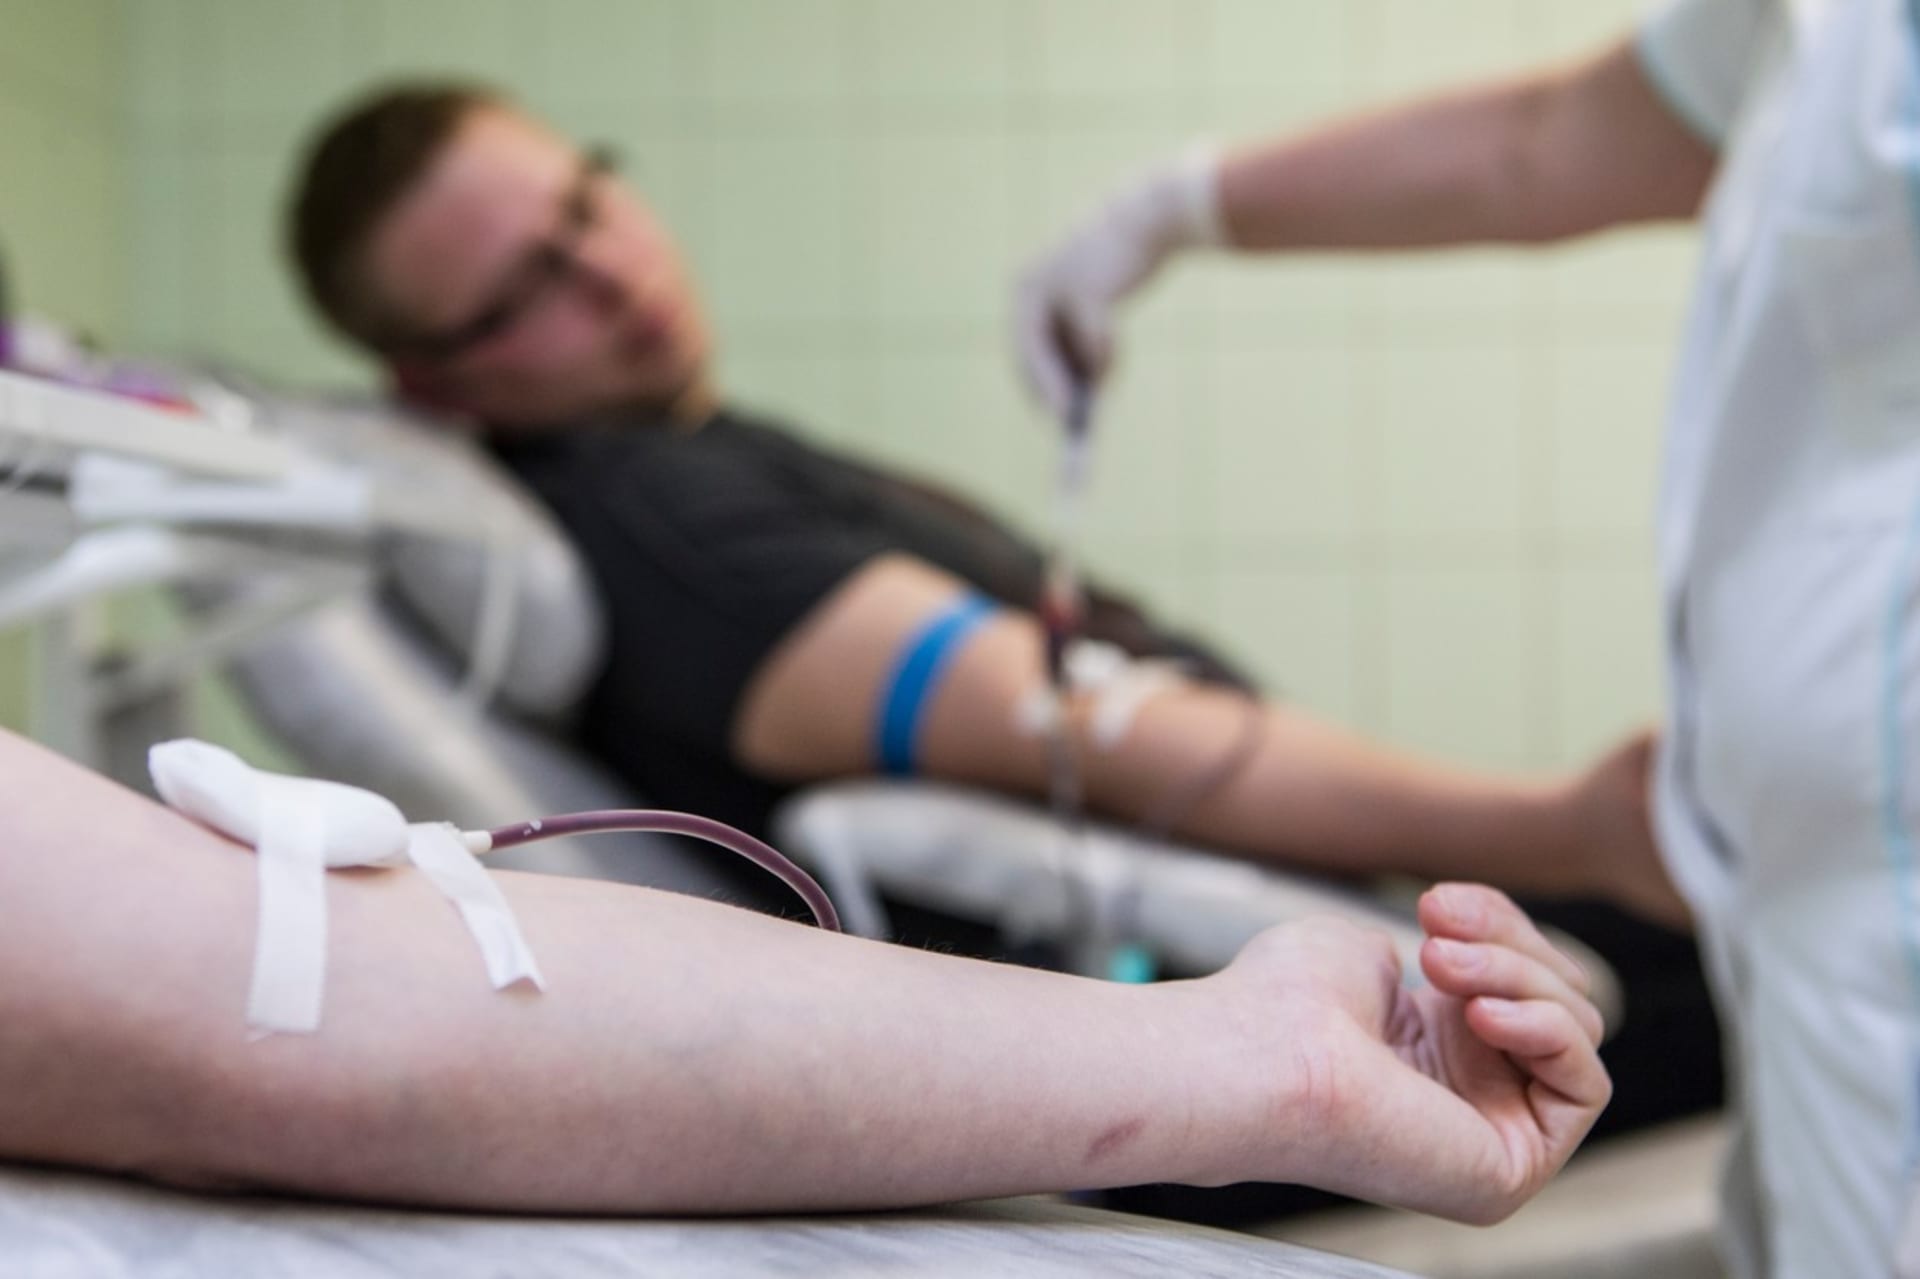 V České republice žijí tisíce lidí, kteří potřebují k životu léky vyrobené z krevní plazmy. Lékaři proto vybízejí, aby se lidé dárcovství nebáli. Kromě dobrého skutku mohou získat i finanční kompenzaci.